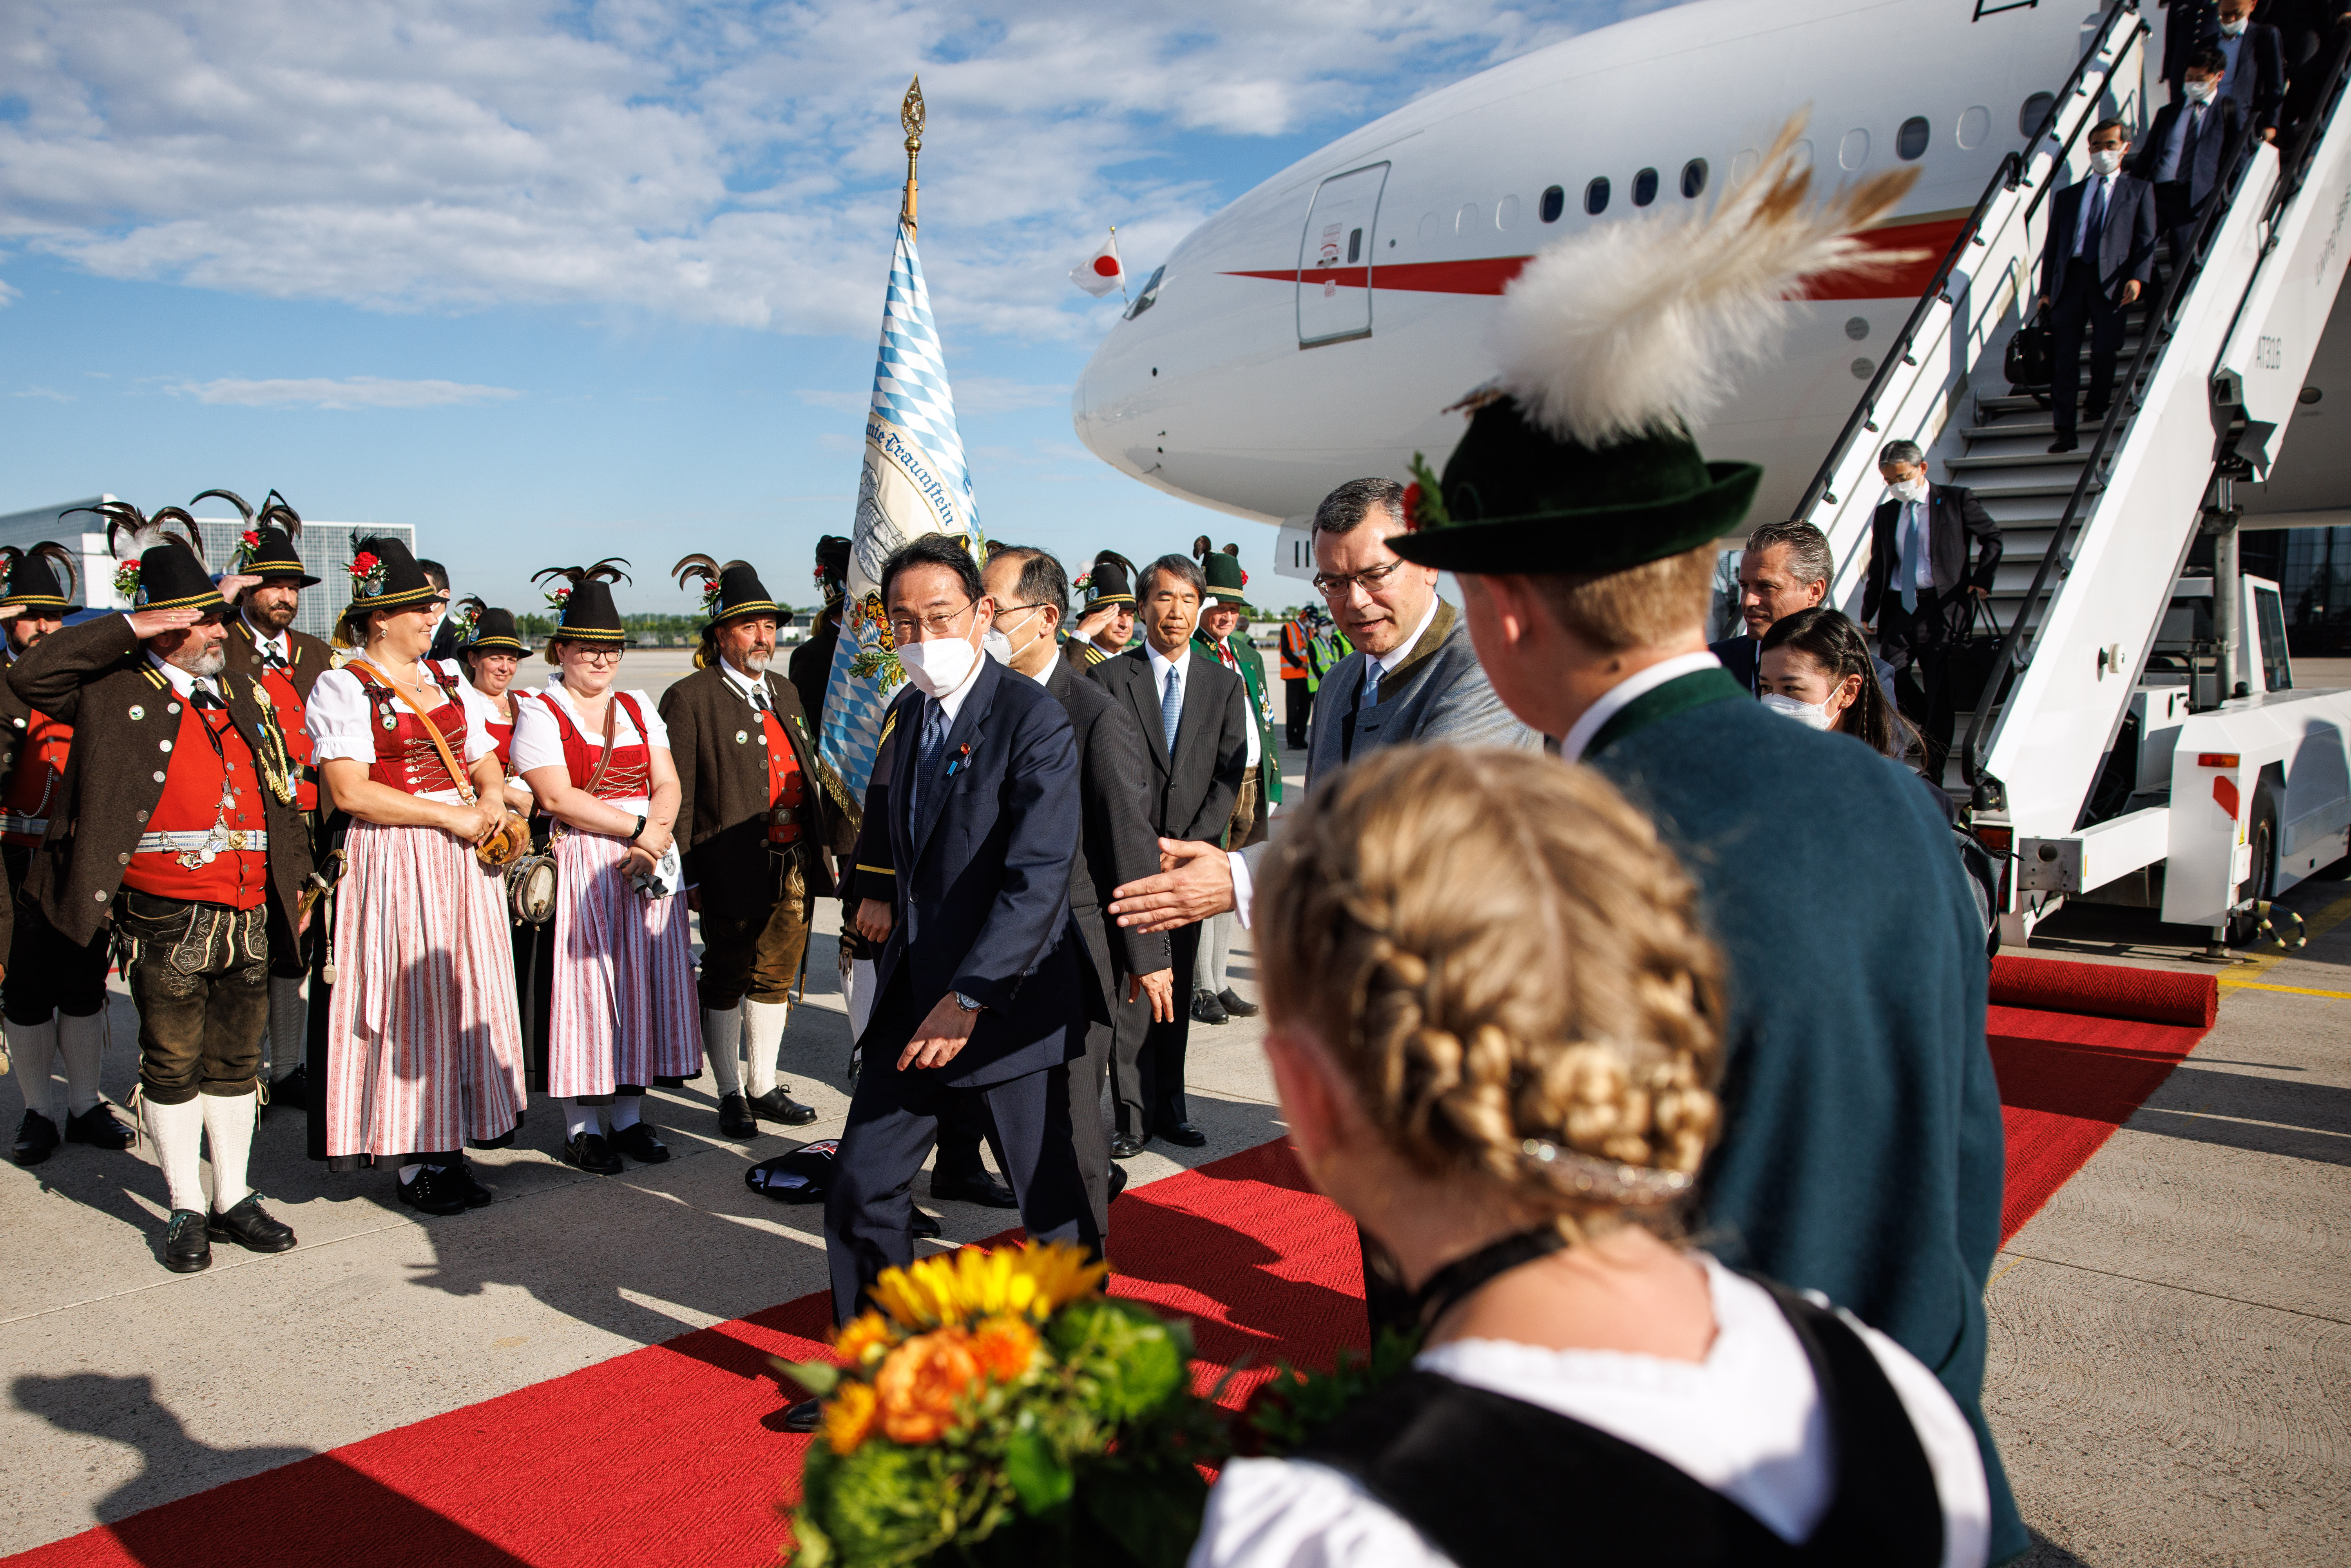 Ankunft von Fumio Kishida (Ministerpräsident Japan) auf dem Flughafen München, Begrüßung durch Florian Herrmann, Leiter der Bayerischen Staatskanzlei und Angehörige eines Trachtenvereins.